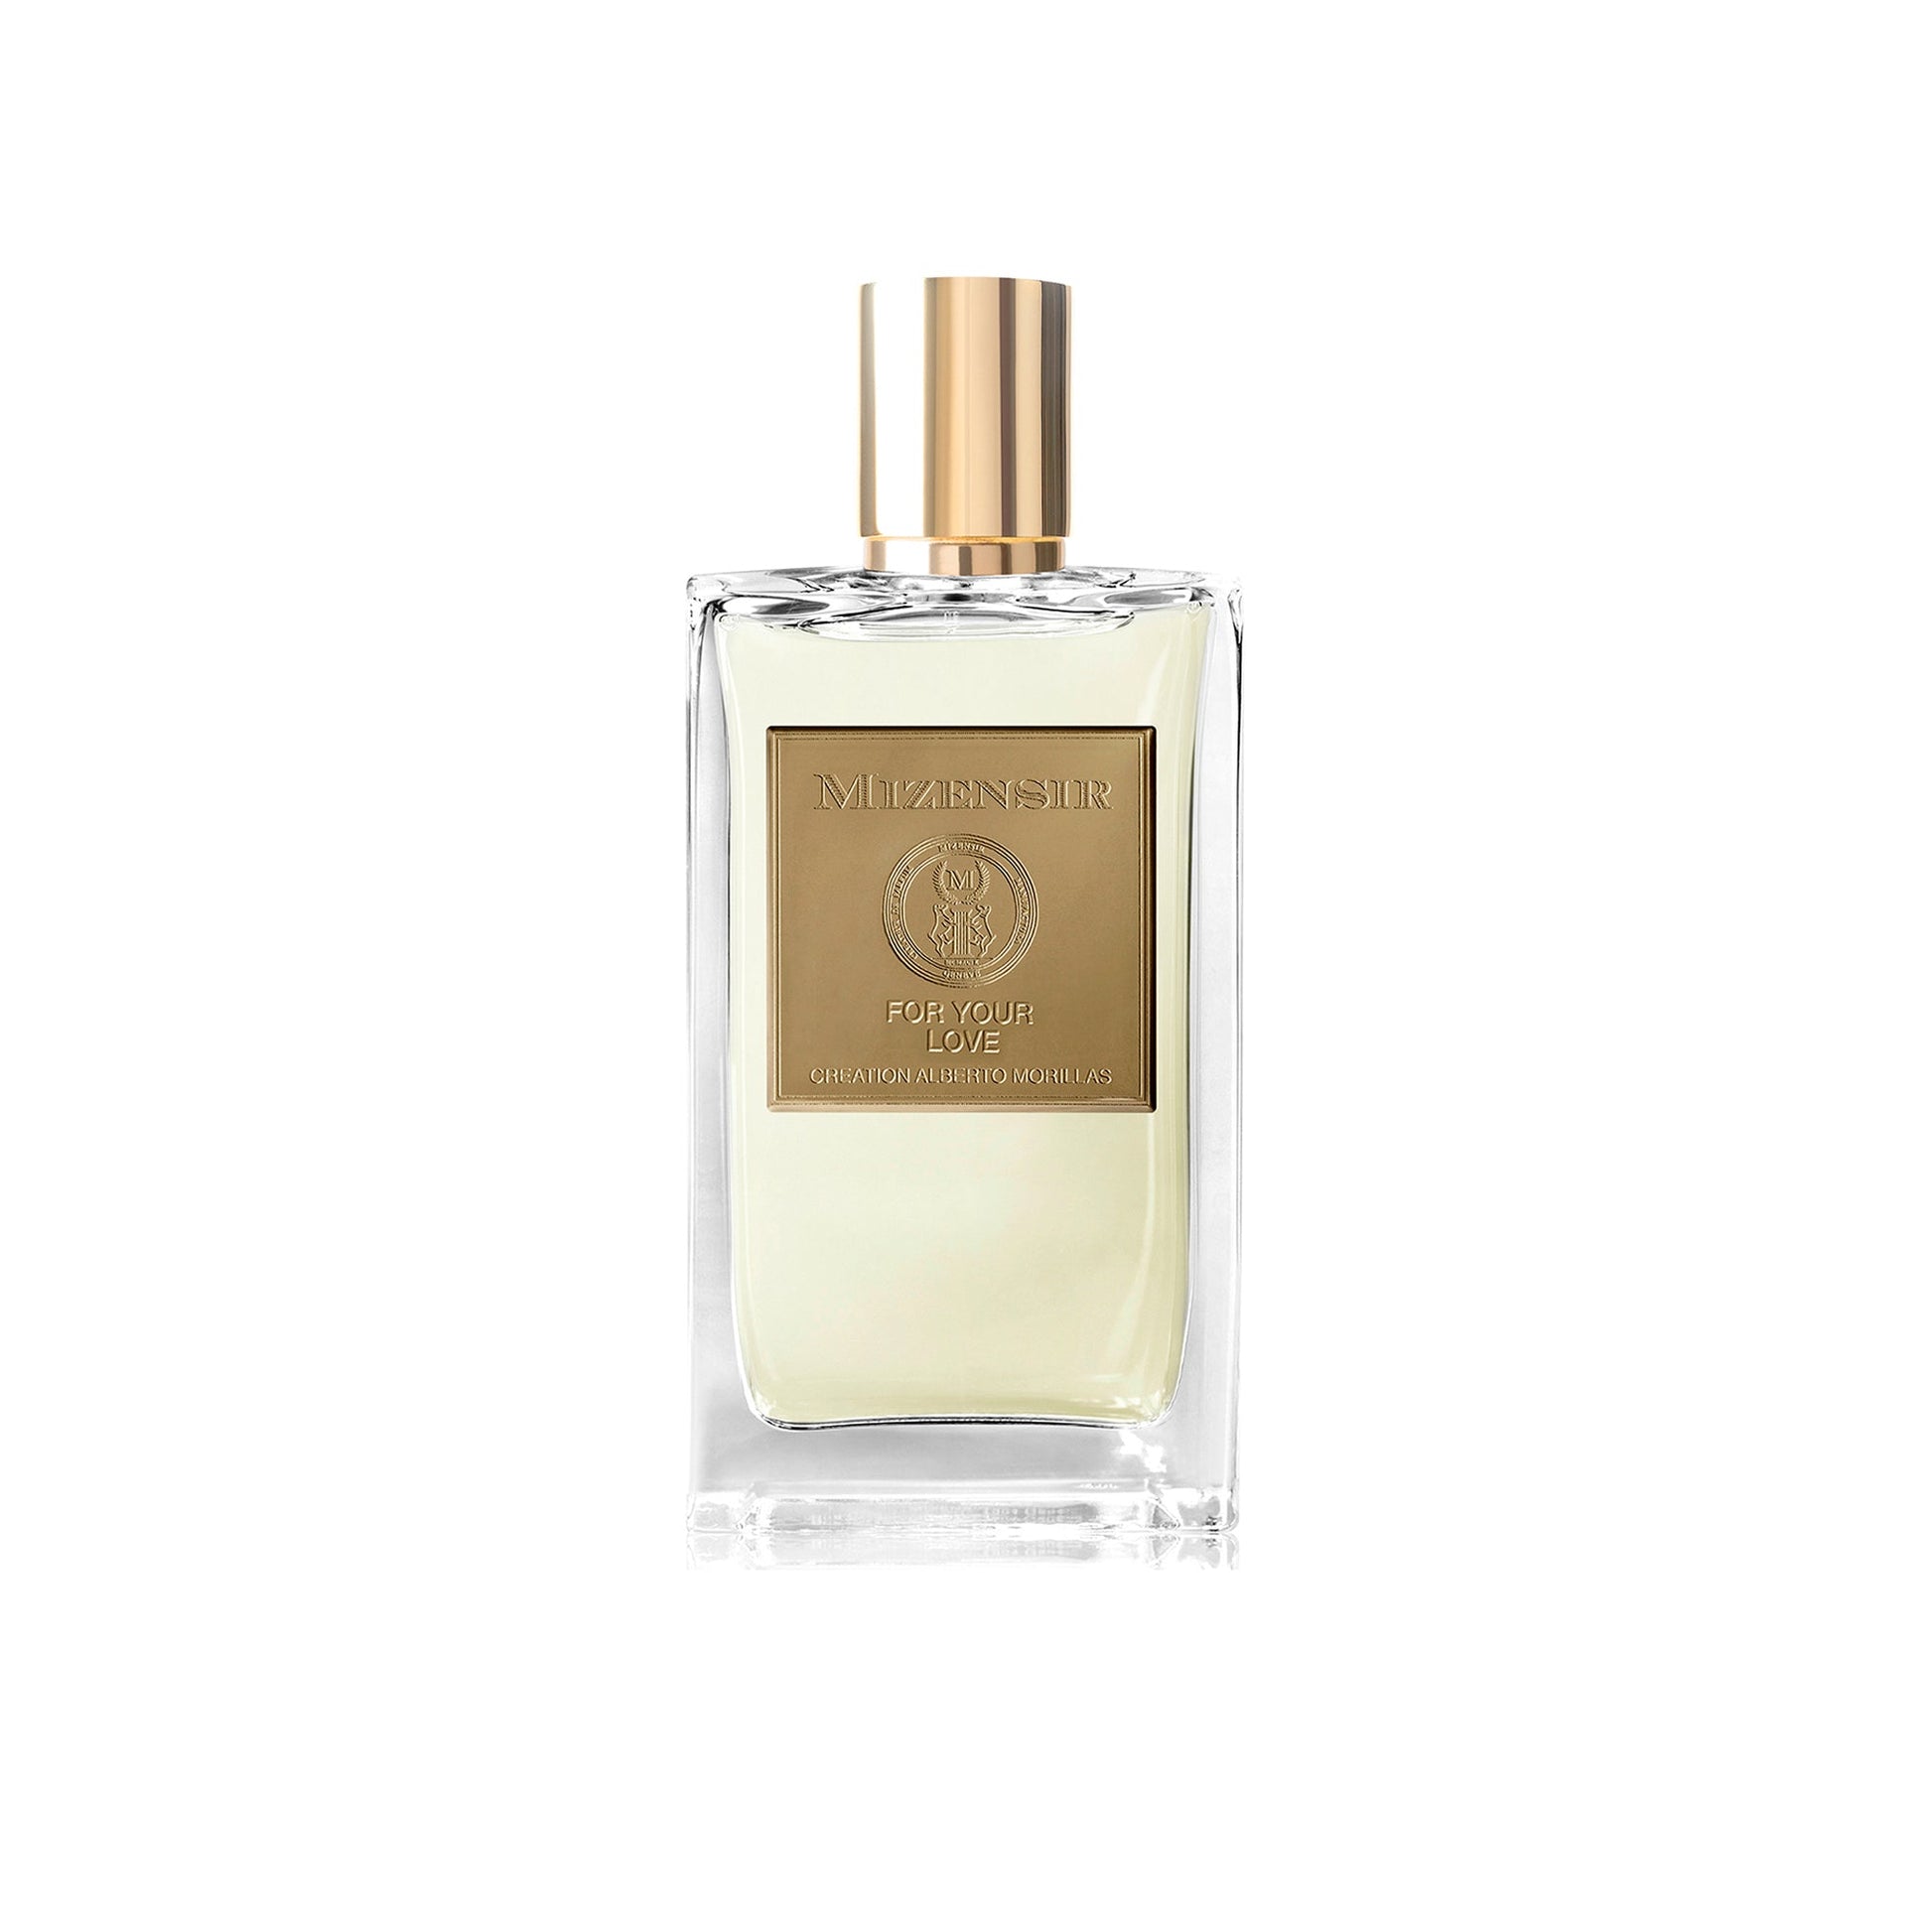 For Your Love 2ml Sample Vial - Eau de Parfum – So Avant Garde